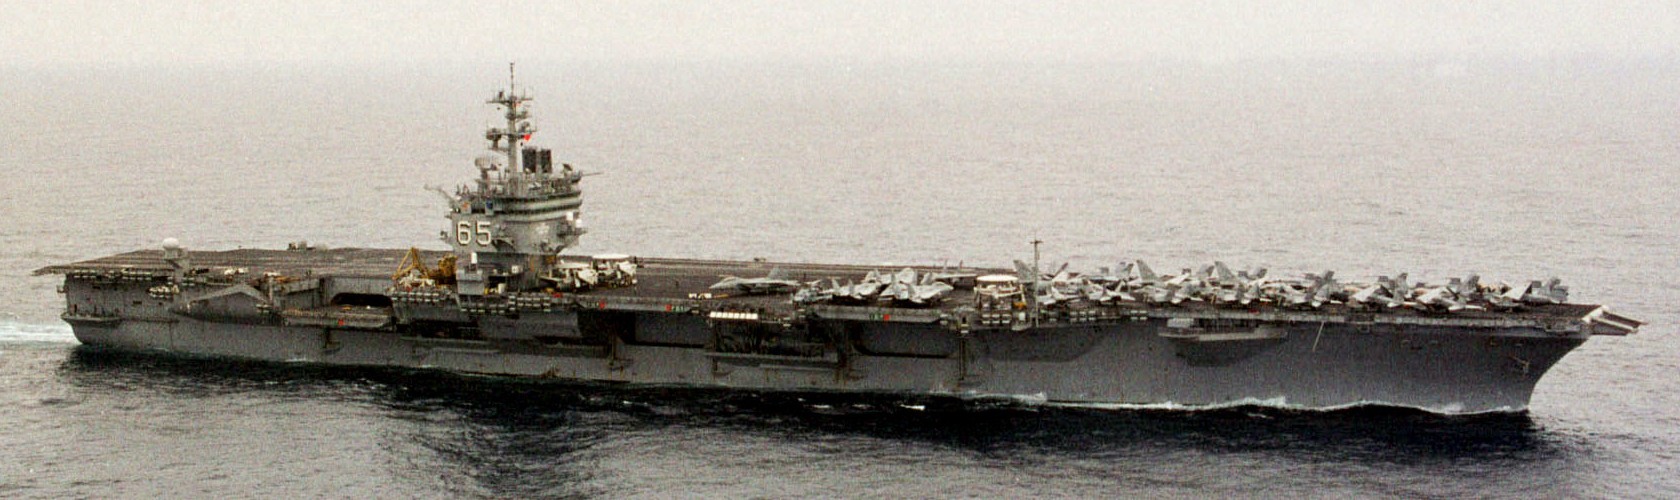 cvn-65 uss enterprise aircraft carrier air wing cvw-3 us navy 78